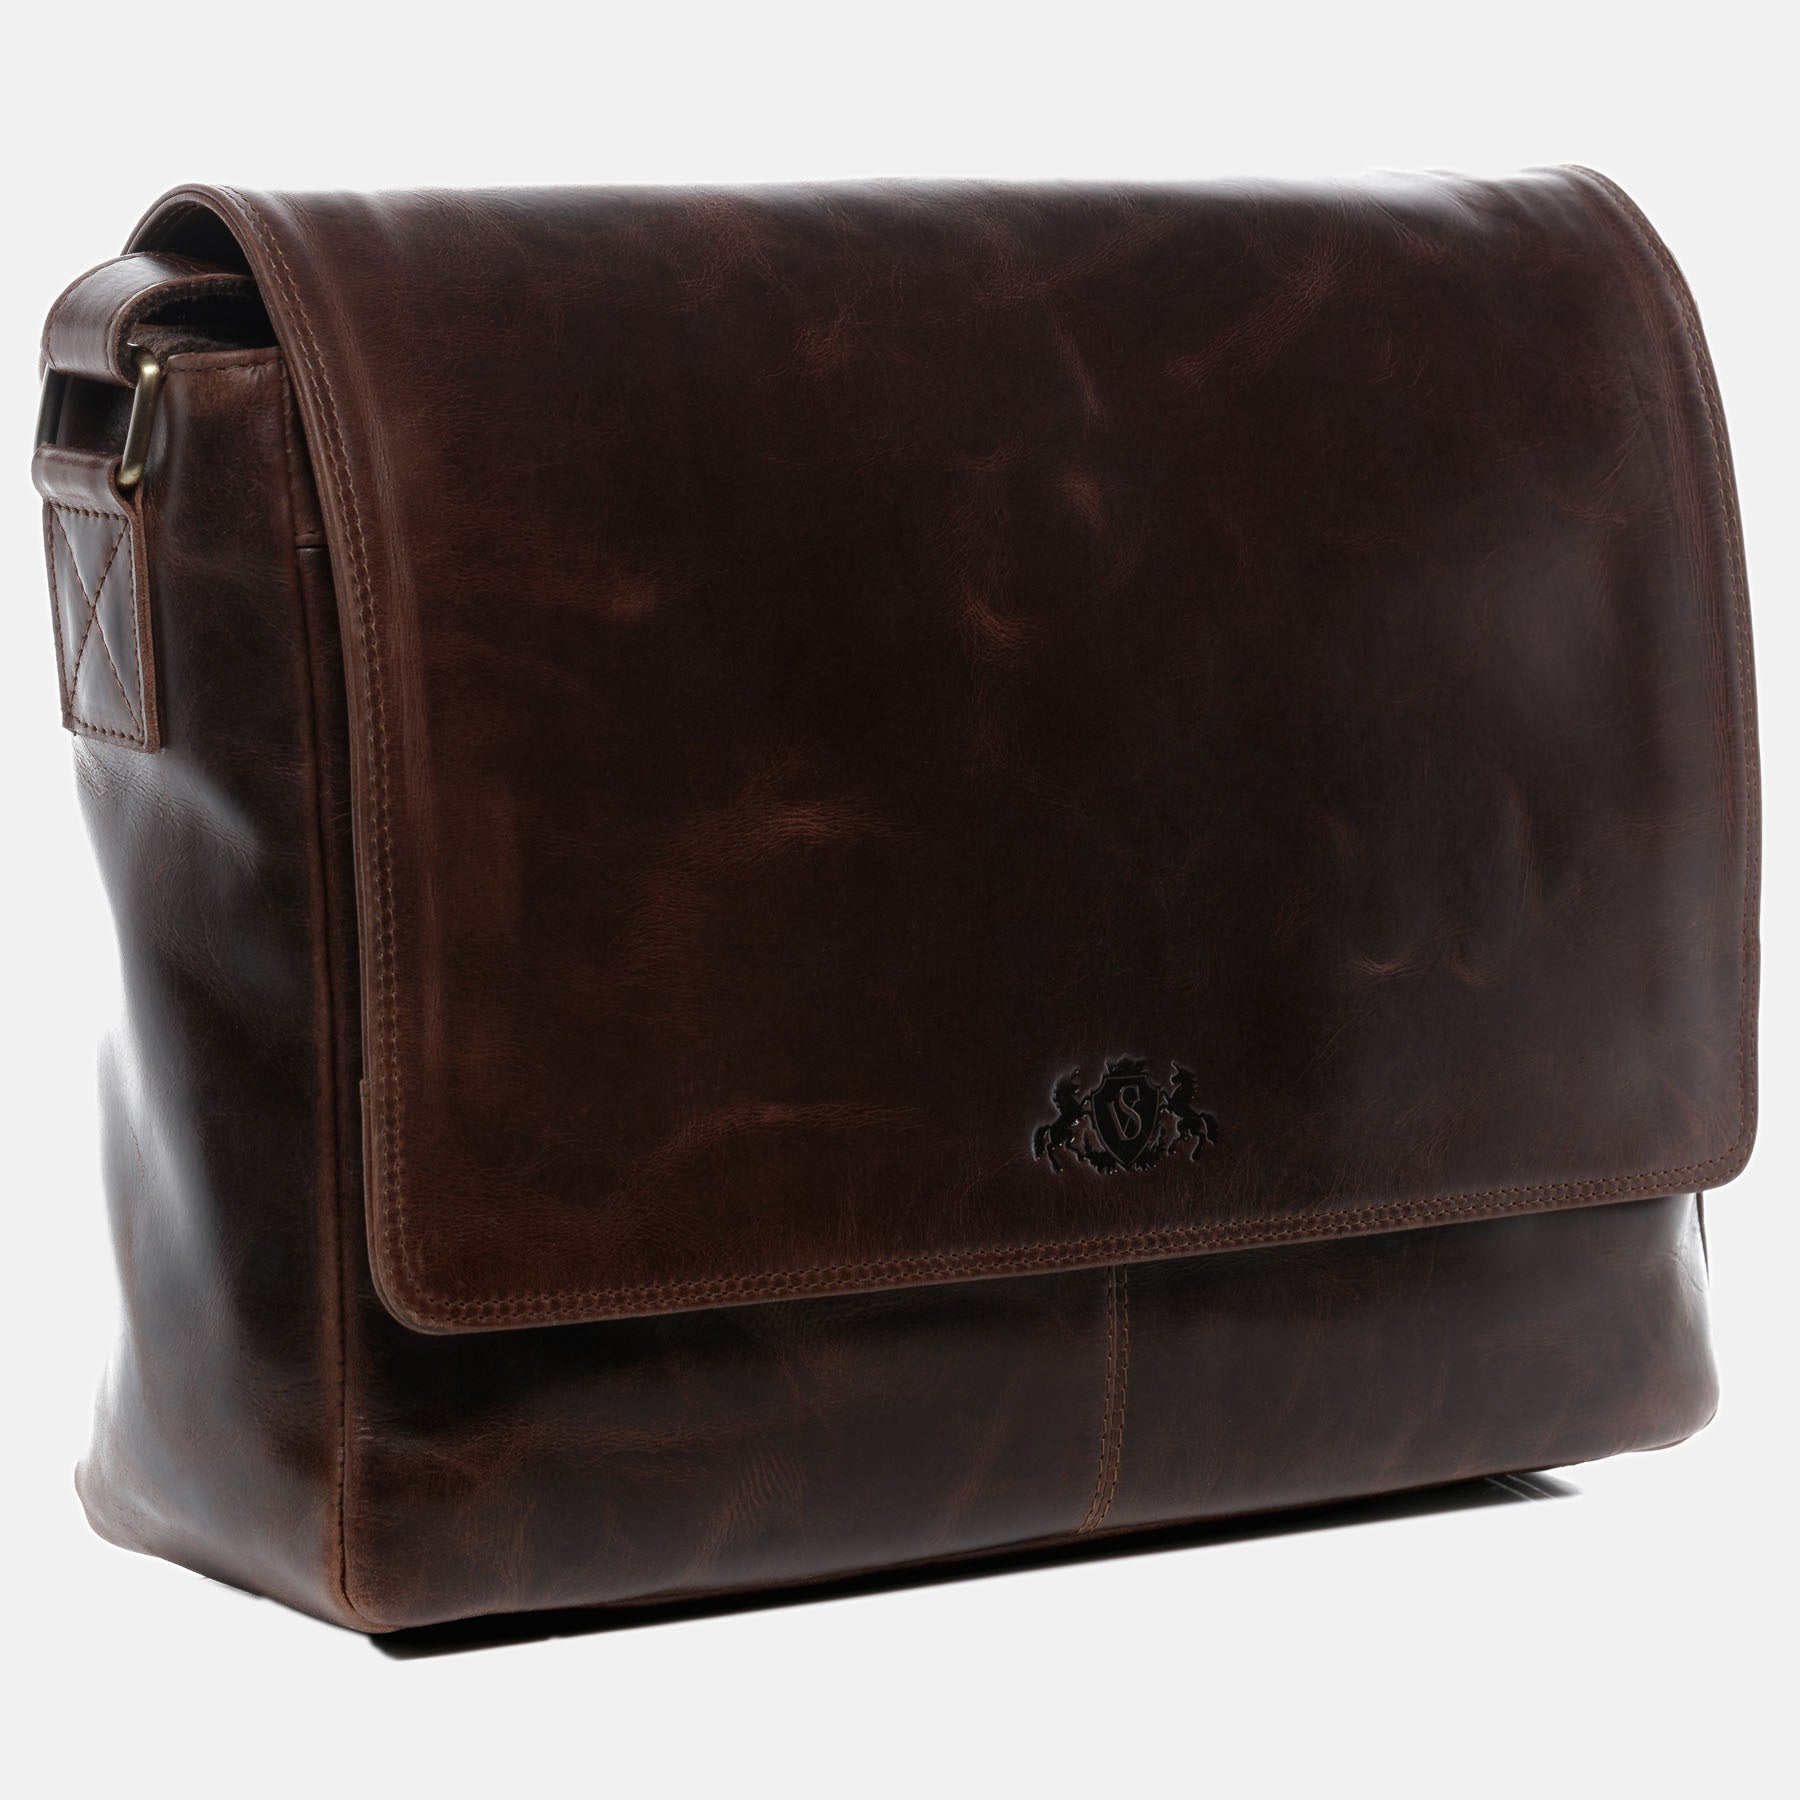 Messenger Bag SPENCER natural leather brown-cognac